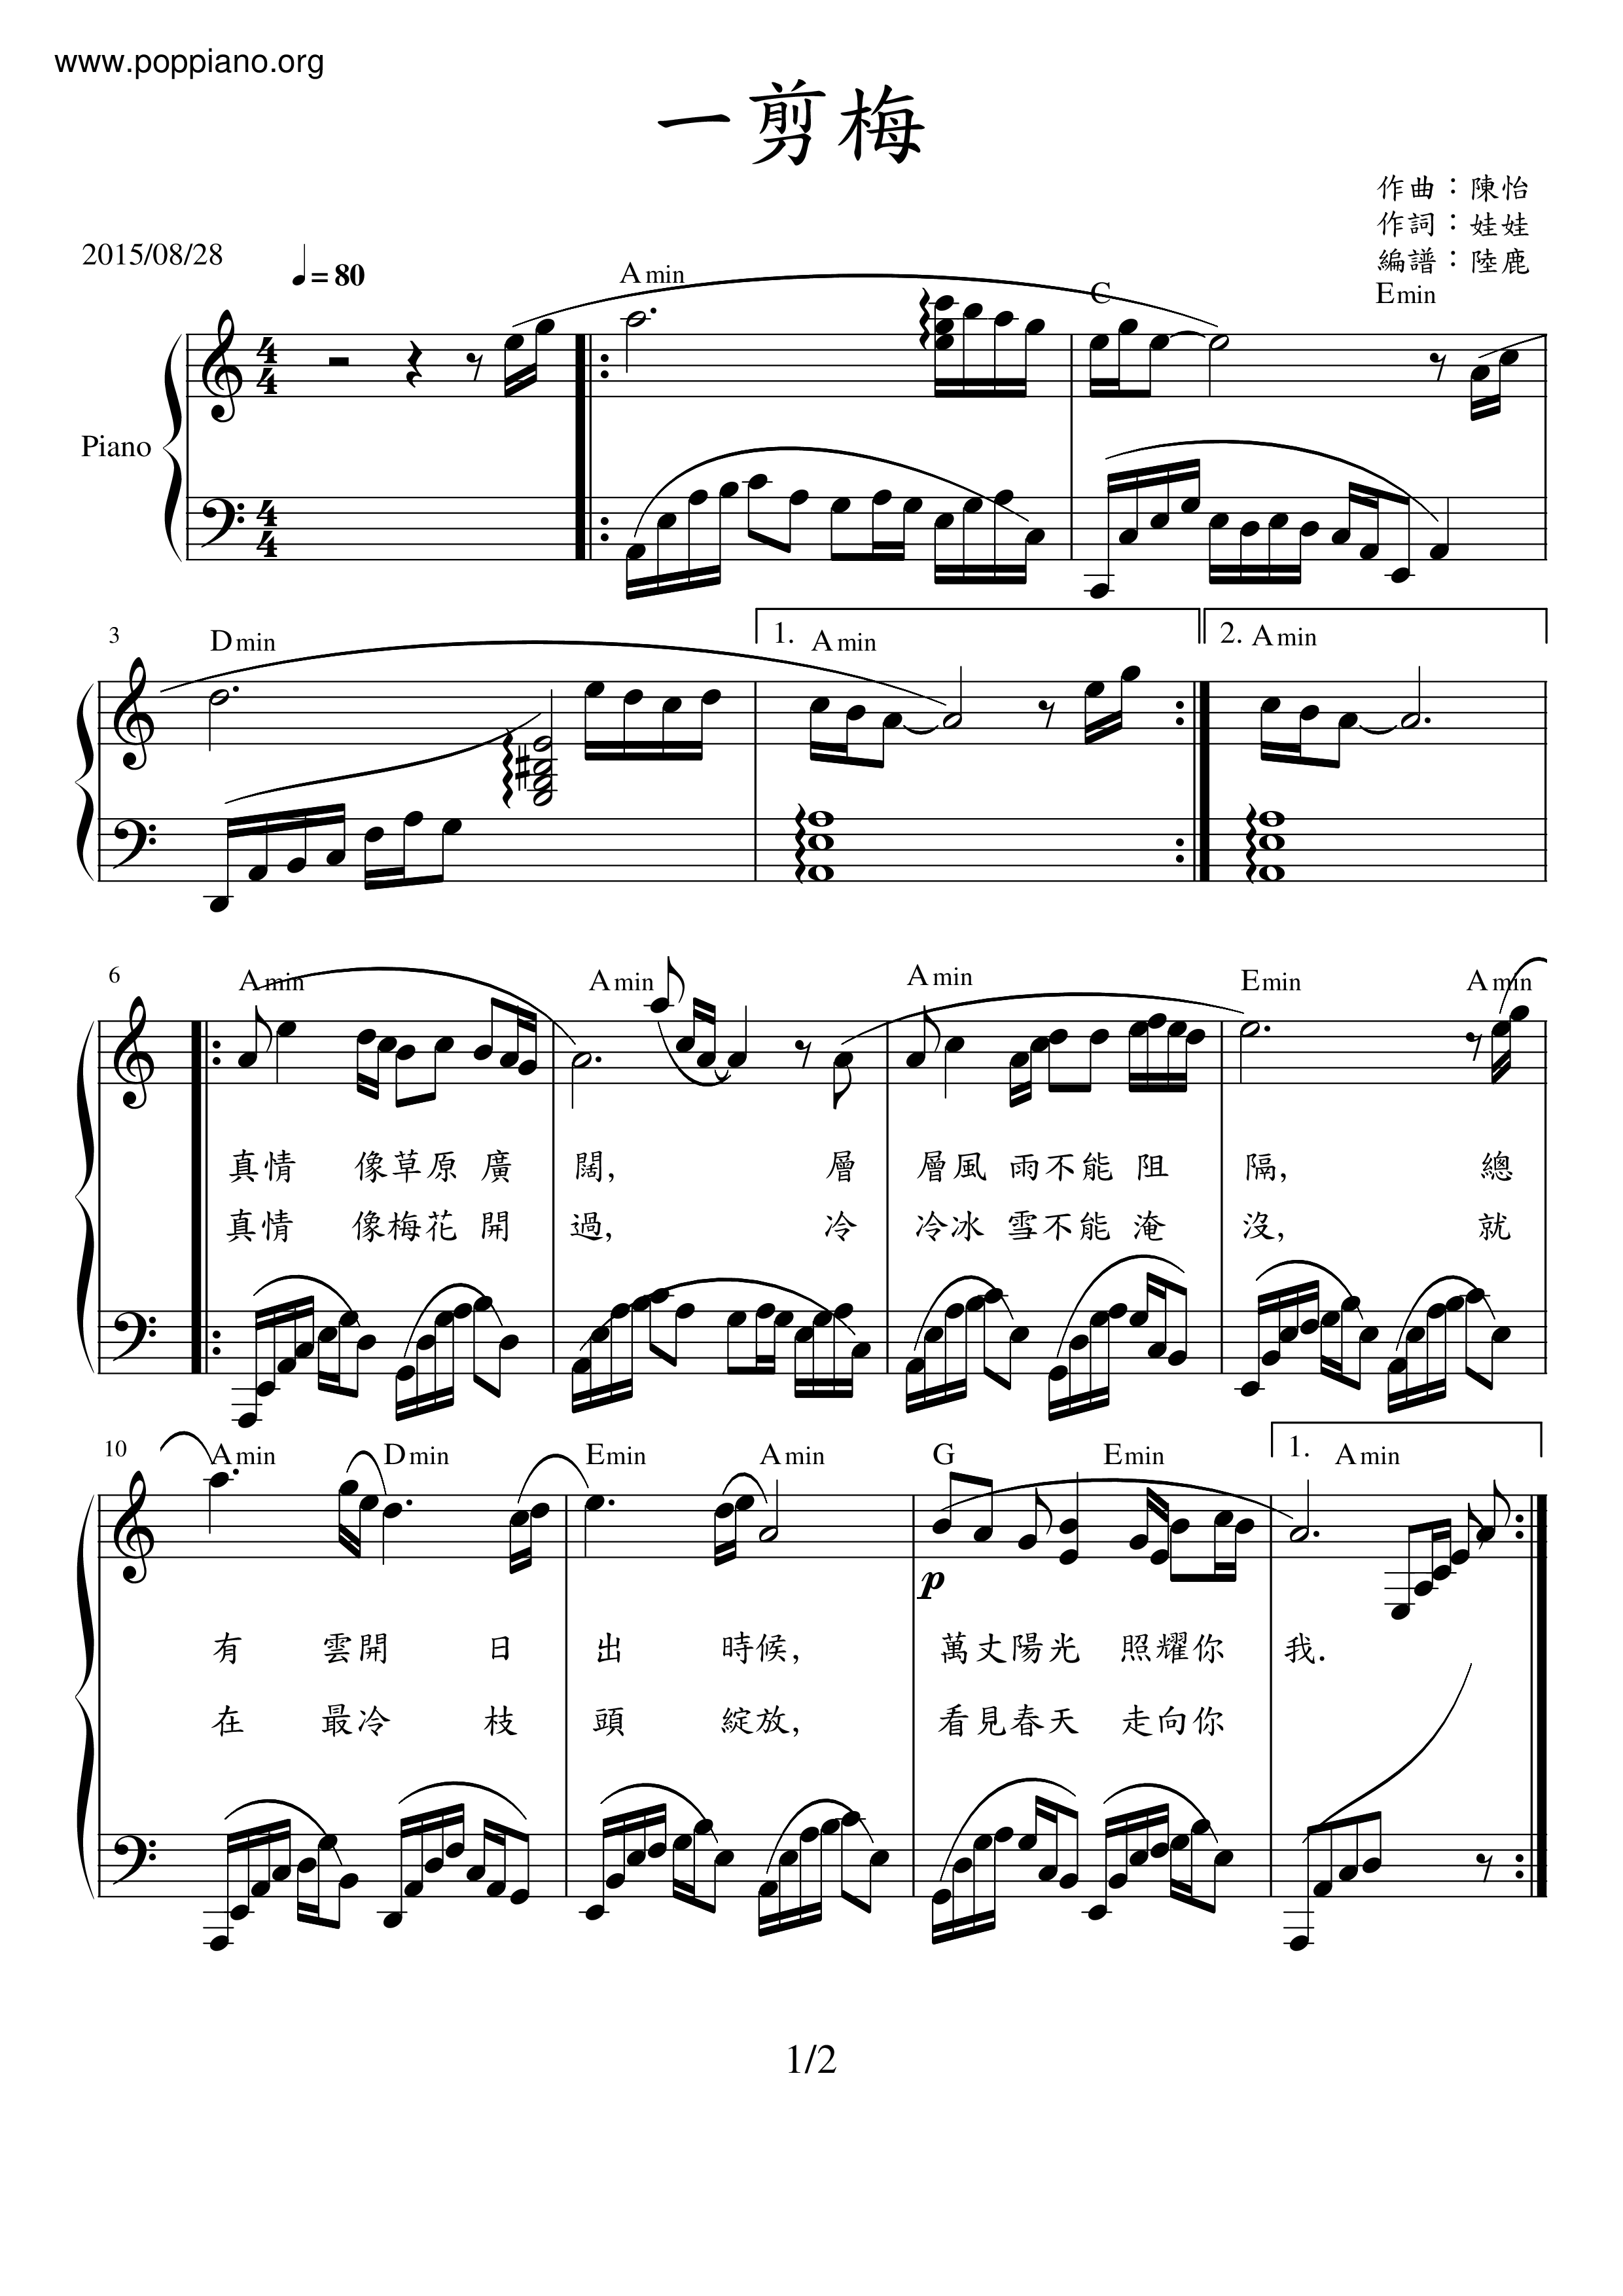 Yi Jian Mei / Xue Hua Piao Piao Score